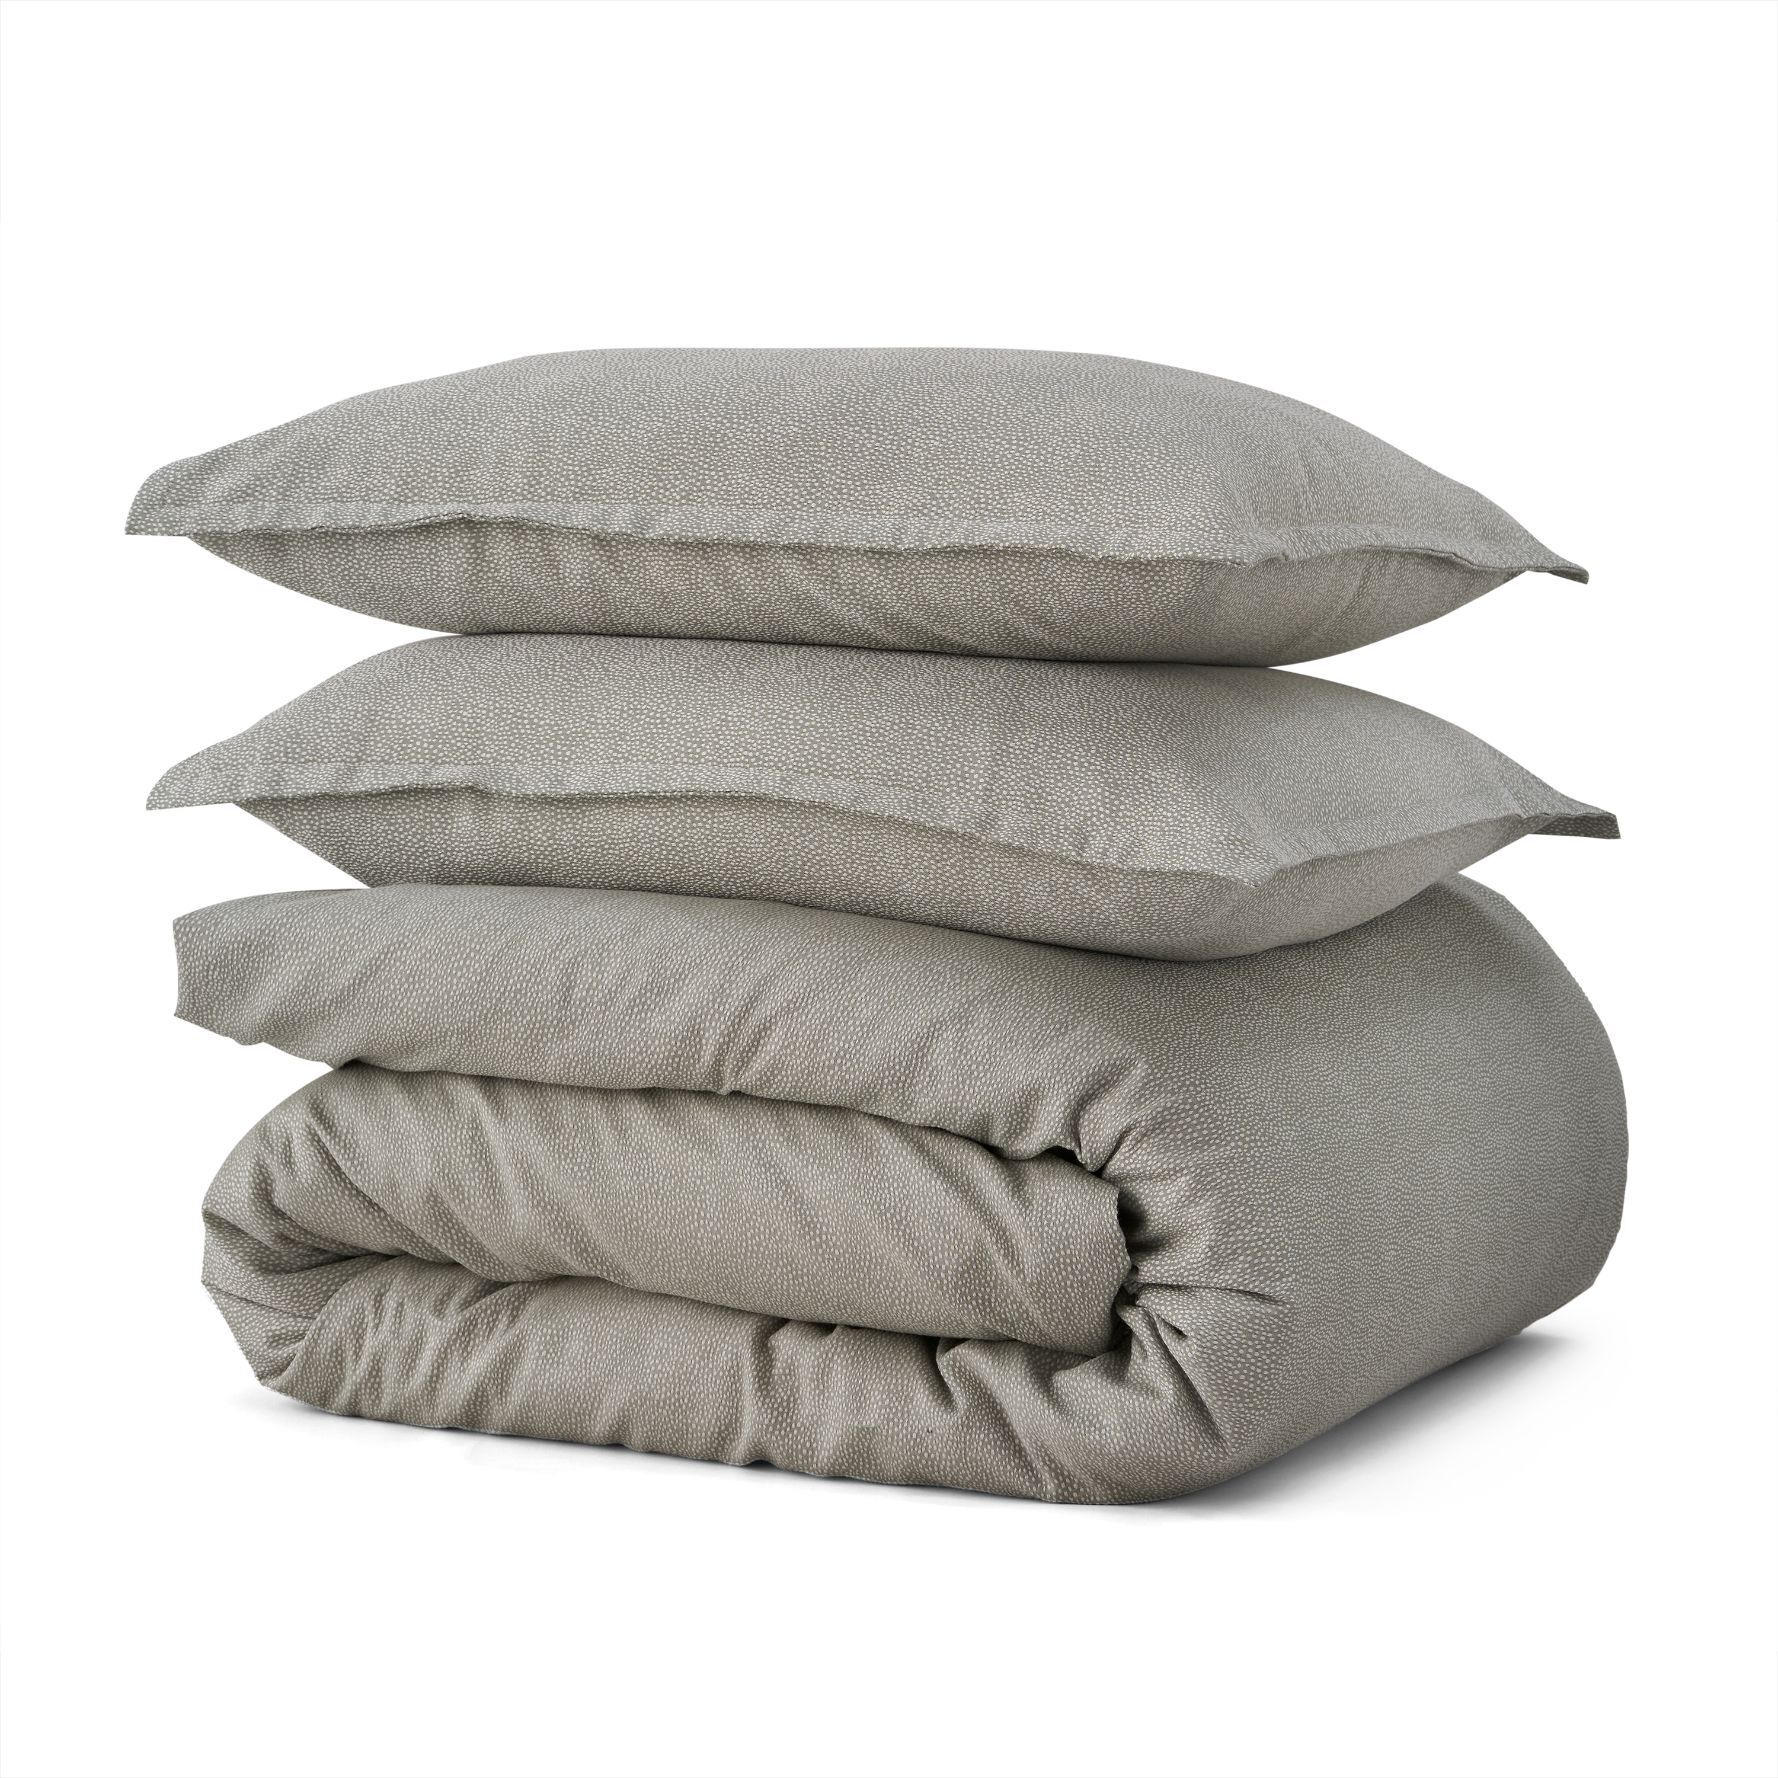 Cotton Collection Soft Jacquard Bed Linen Set - image 1